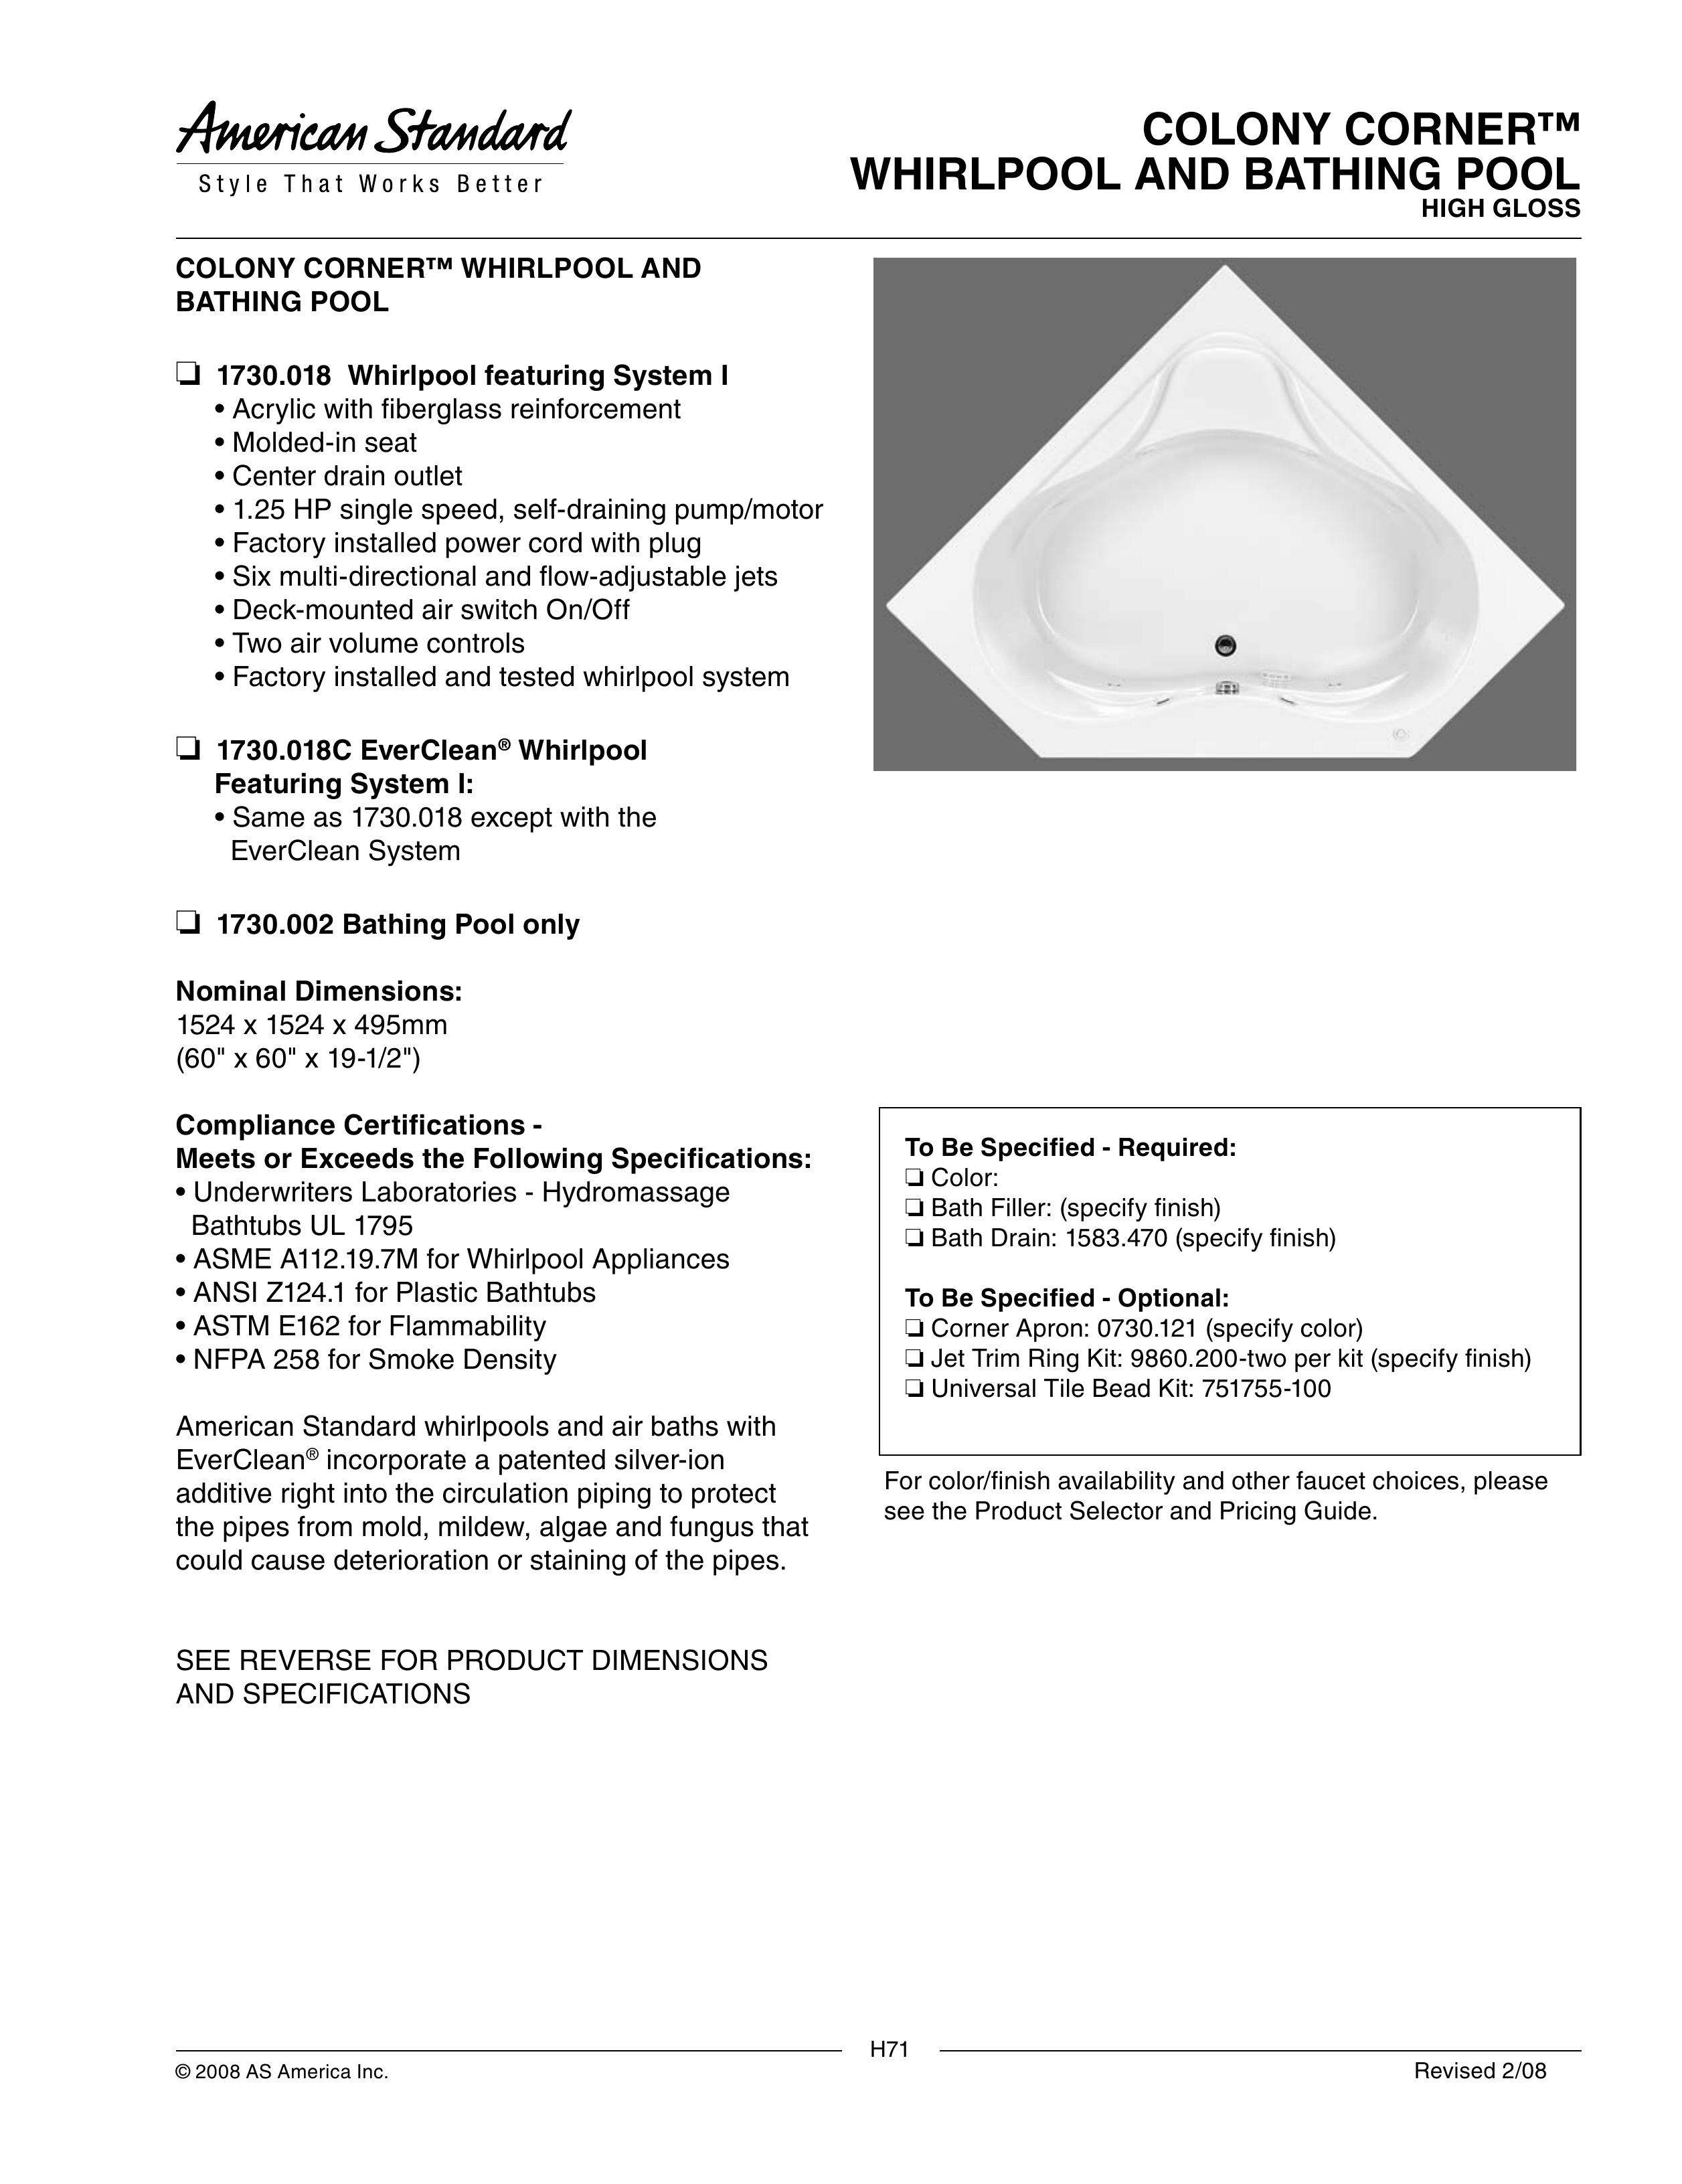 American Standard 1730.018 Hot Tub User Manual